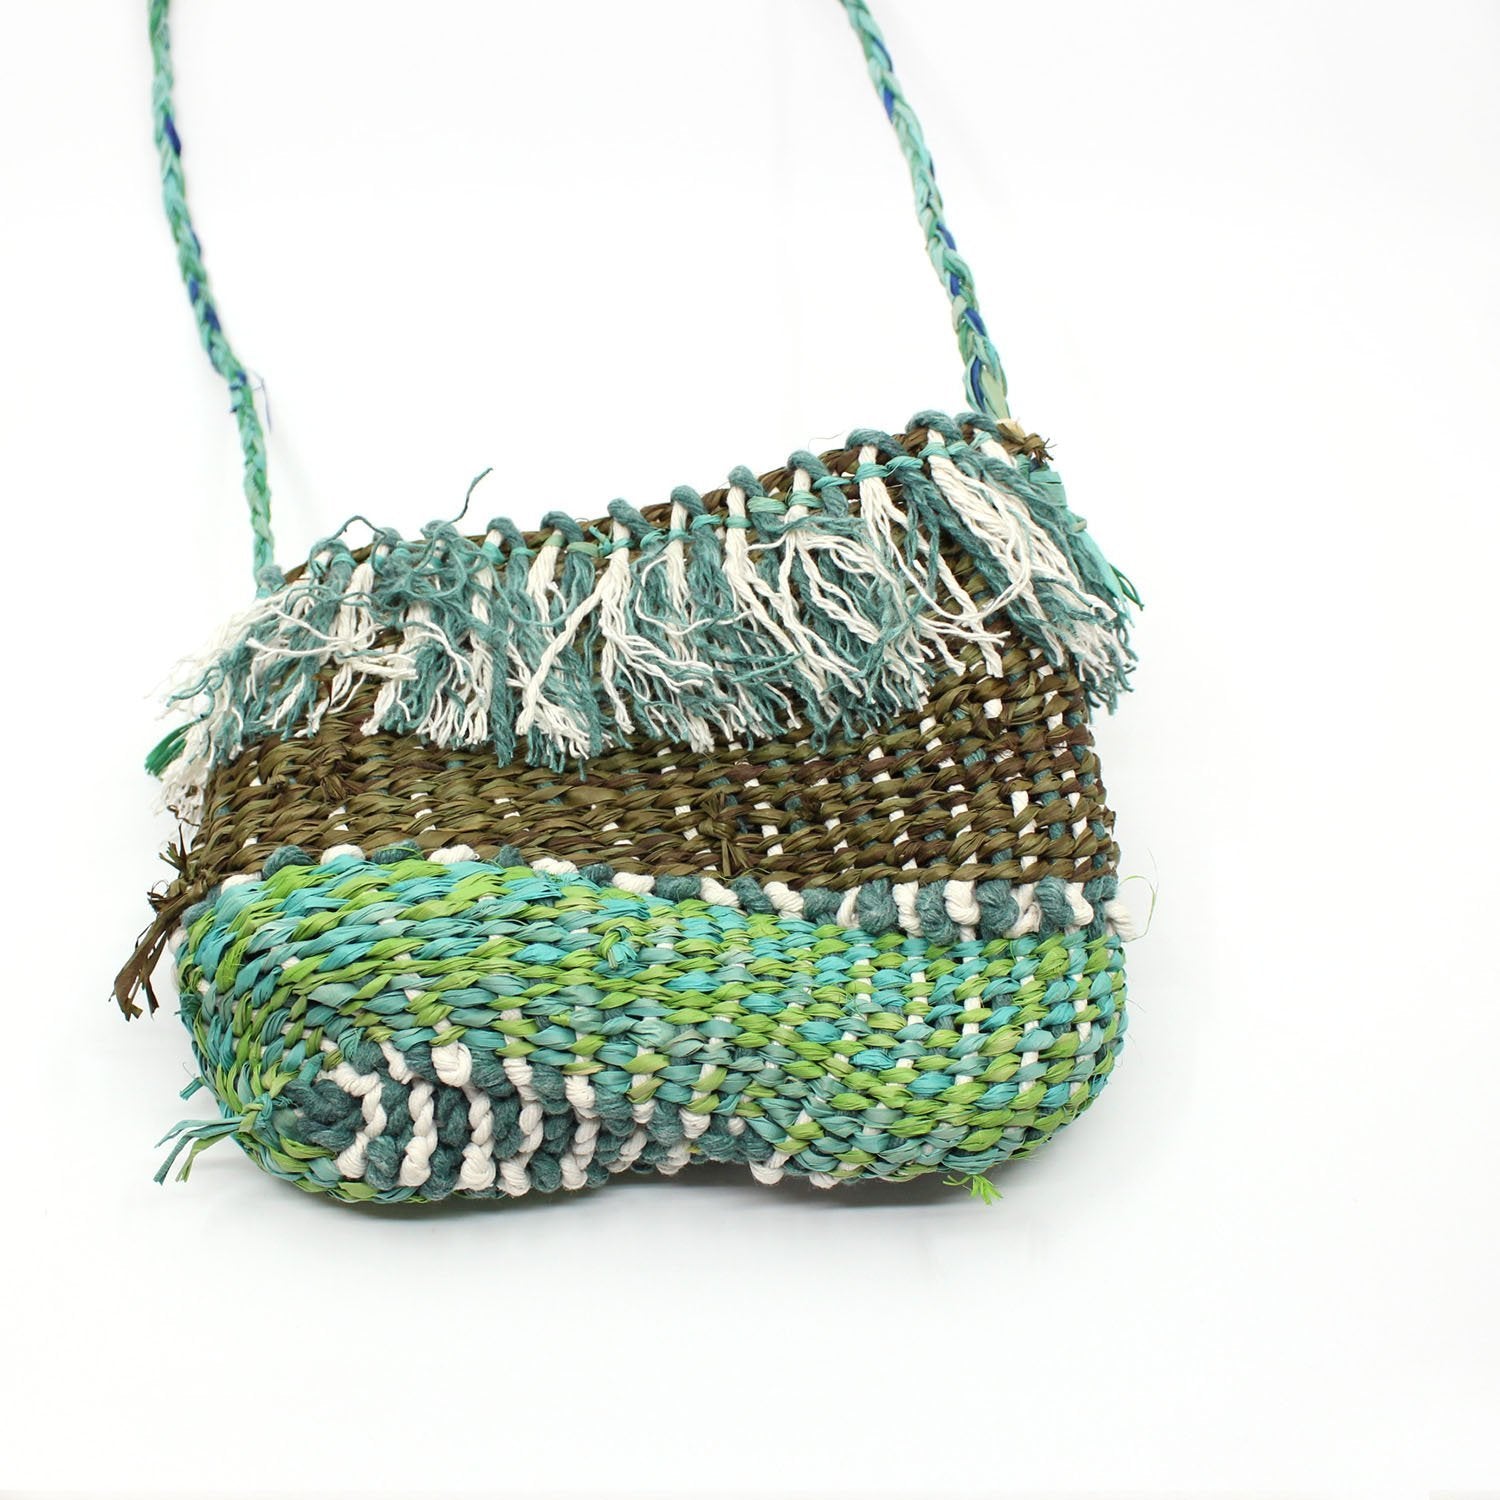 Bag in Green/Olive Fibre Art MOA ARTS 